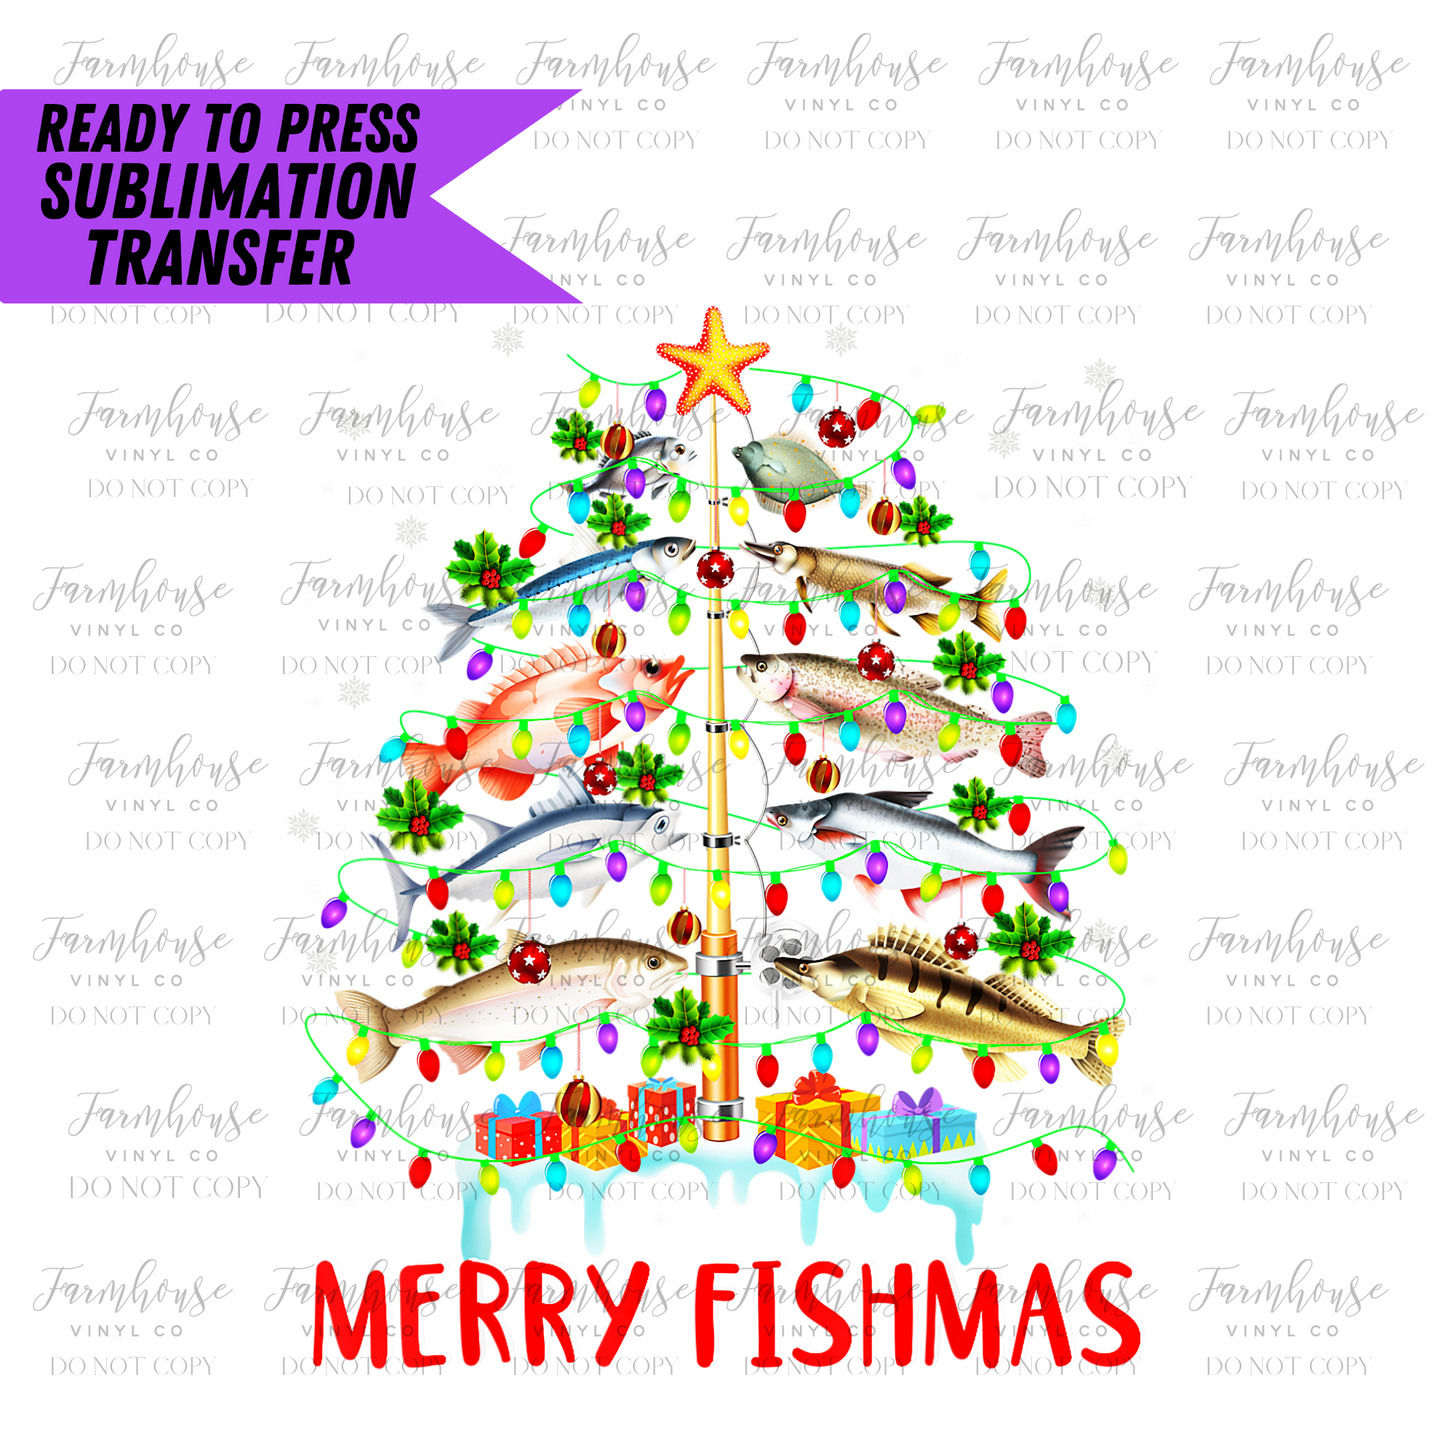 Merry Fishmas Ready To Press Sublimation Transfer - Farmhouse Vinyl Co